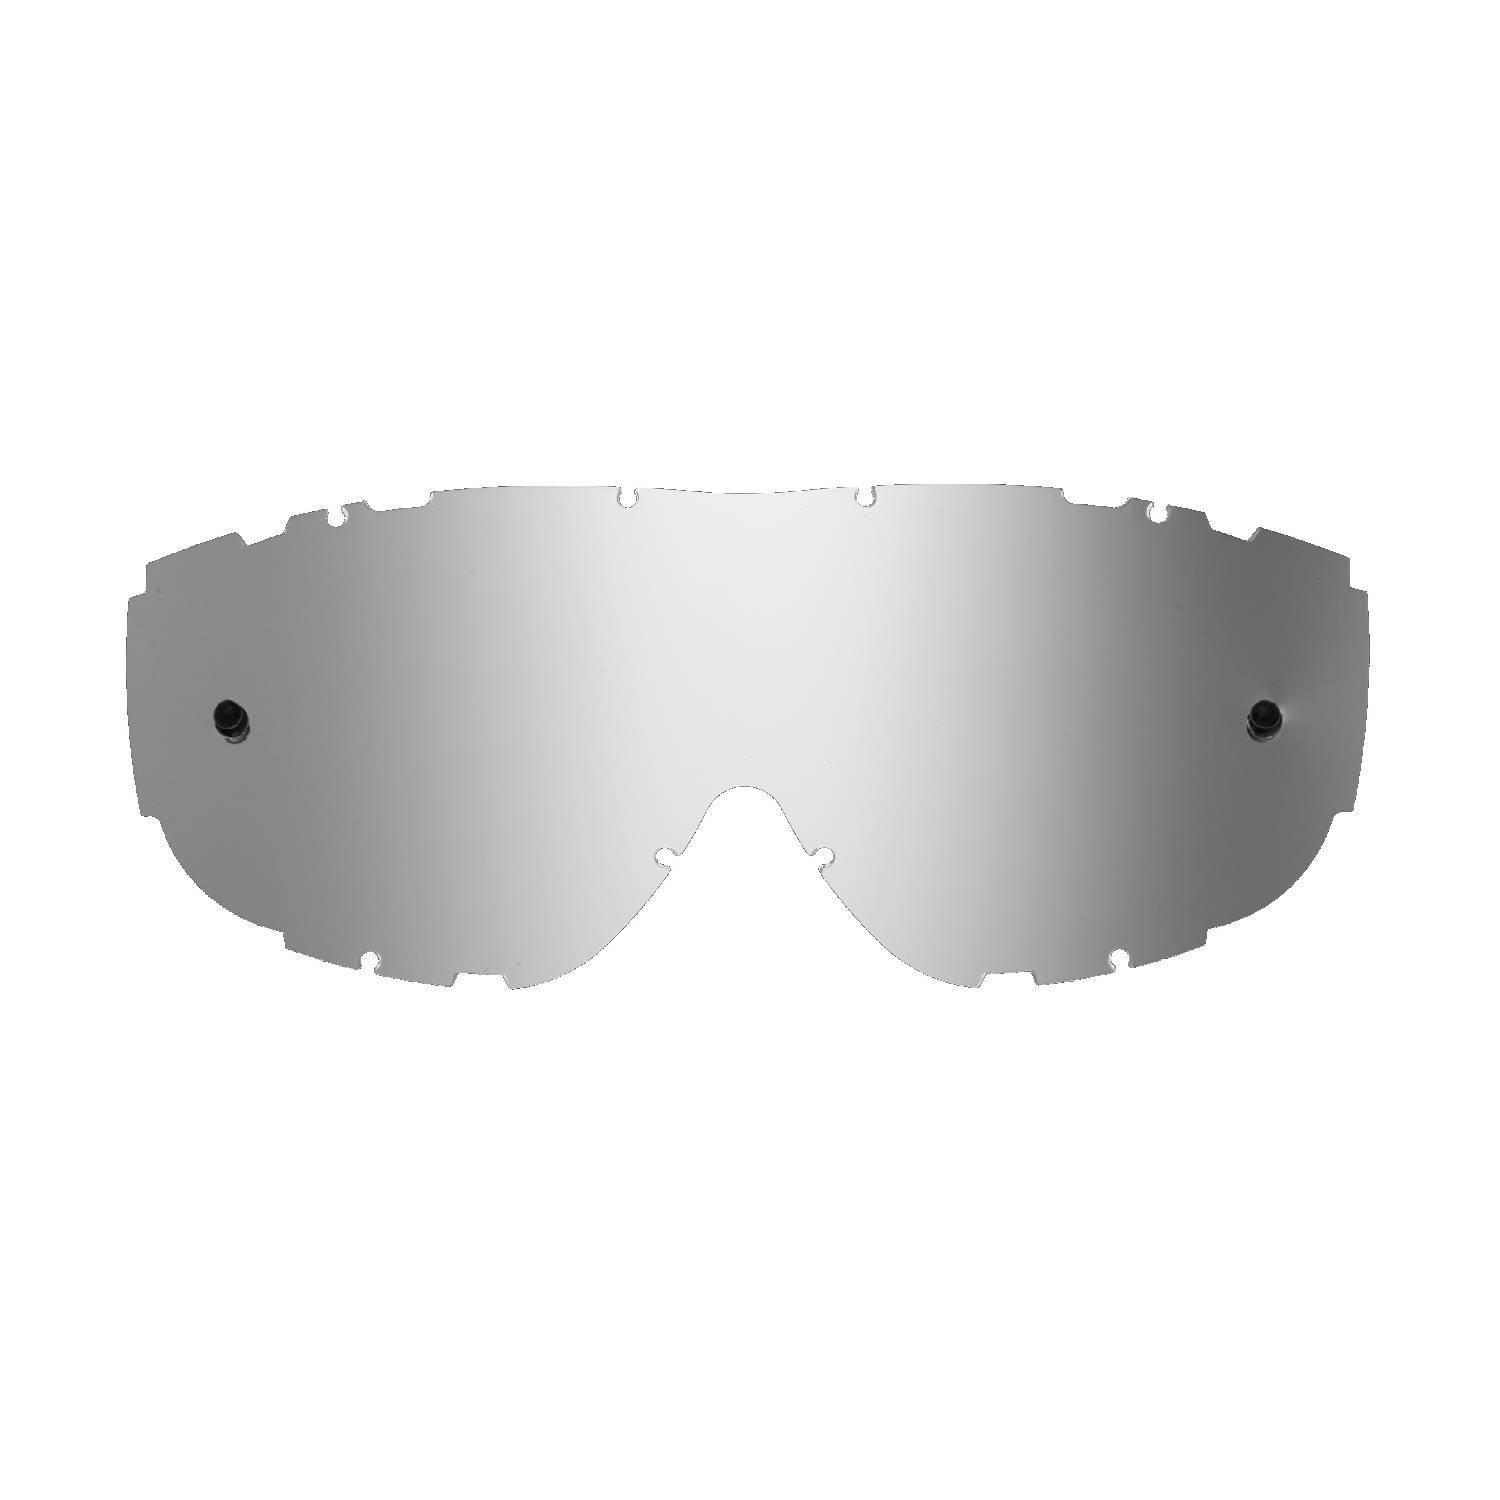 Lente di ricambio argento specchiato compatibile per occhiale/maschera Smith Piston